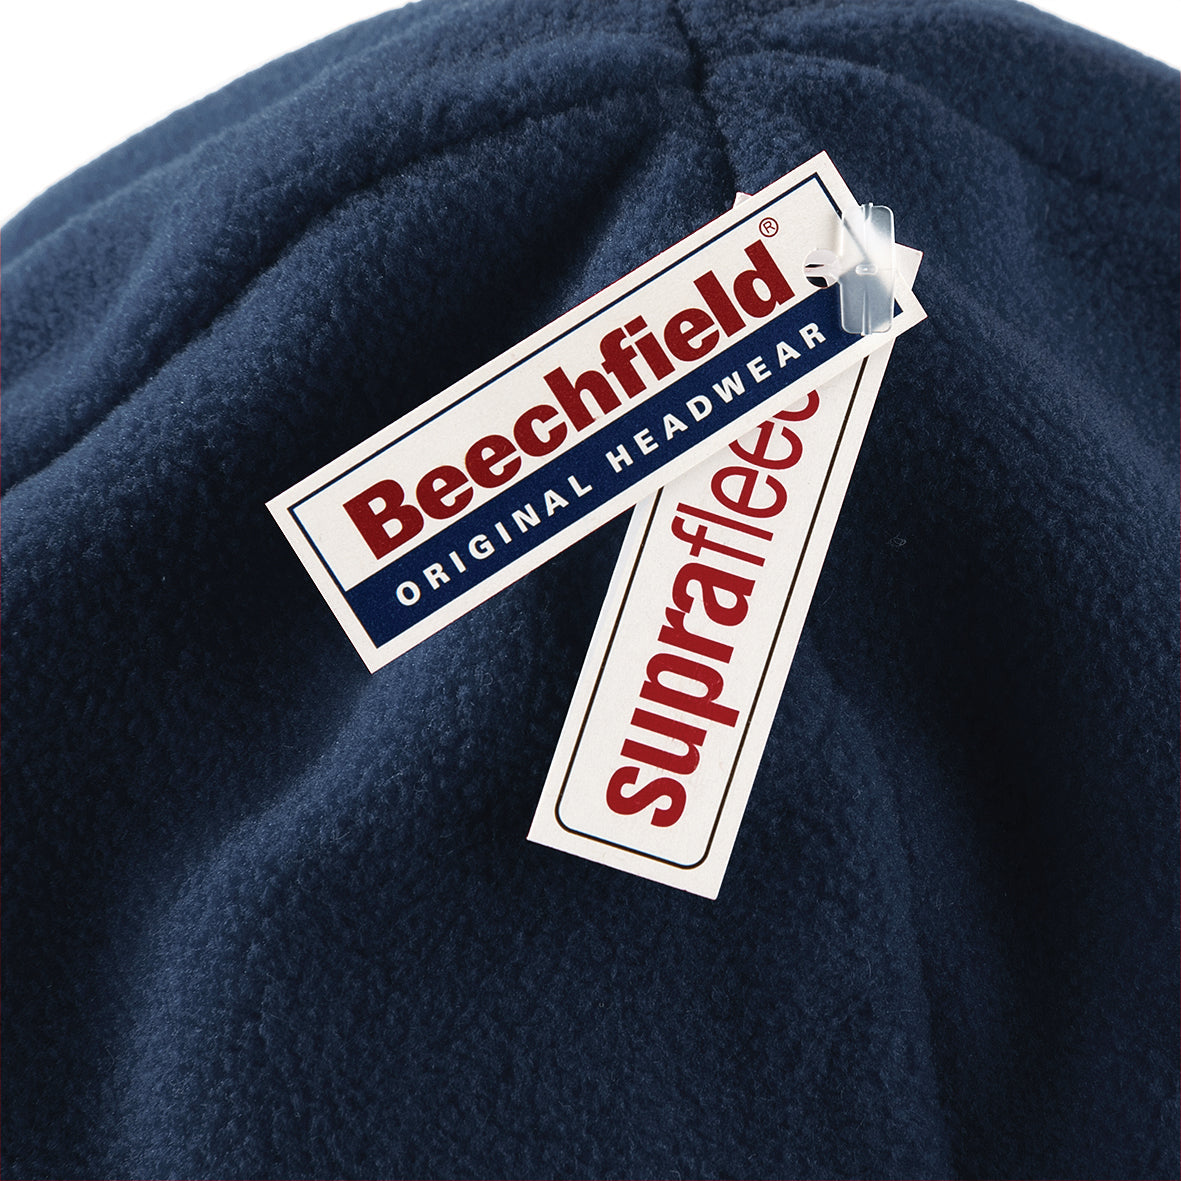 Beechfield Suprafleece® Summit Hat